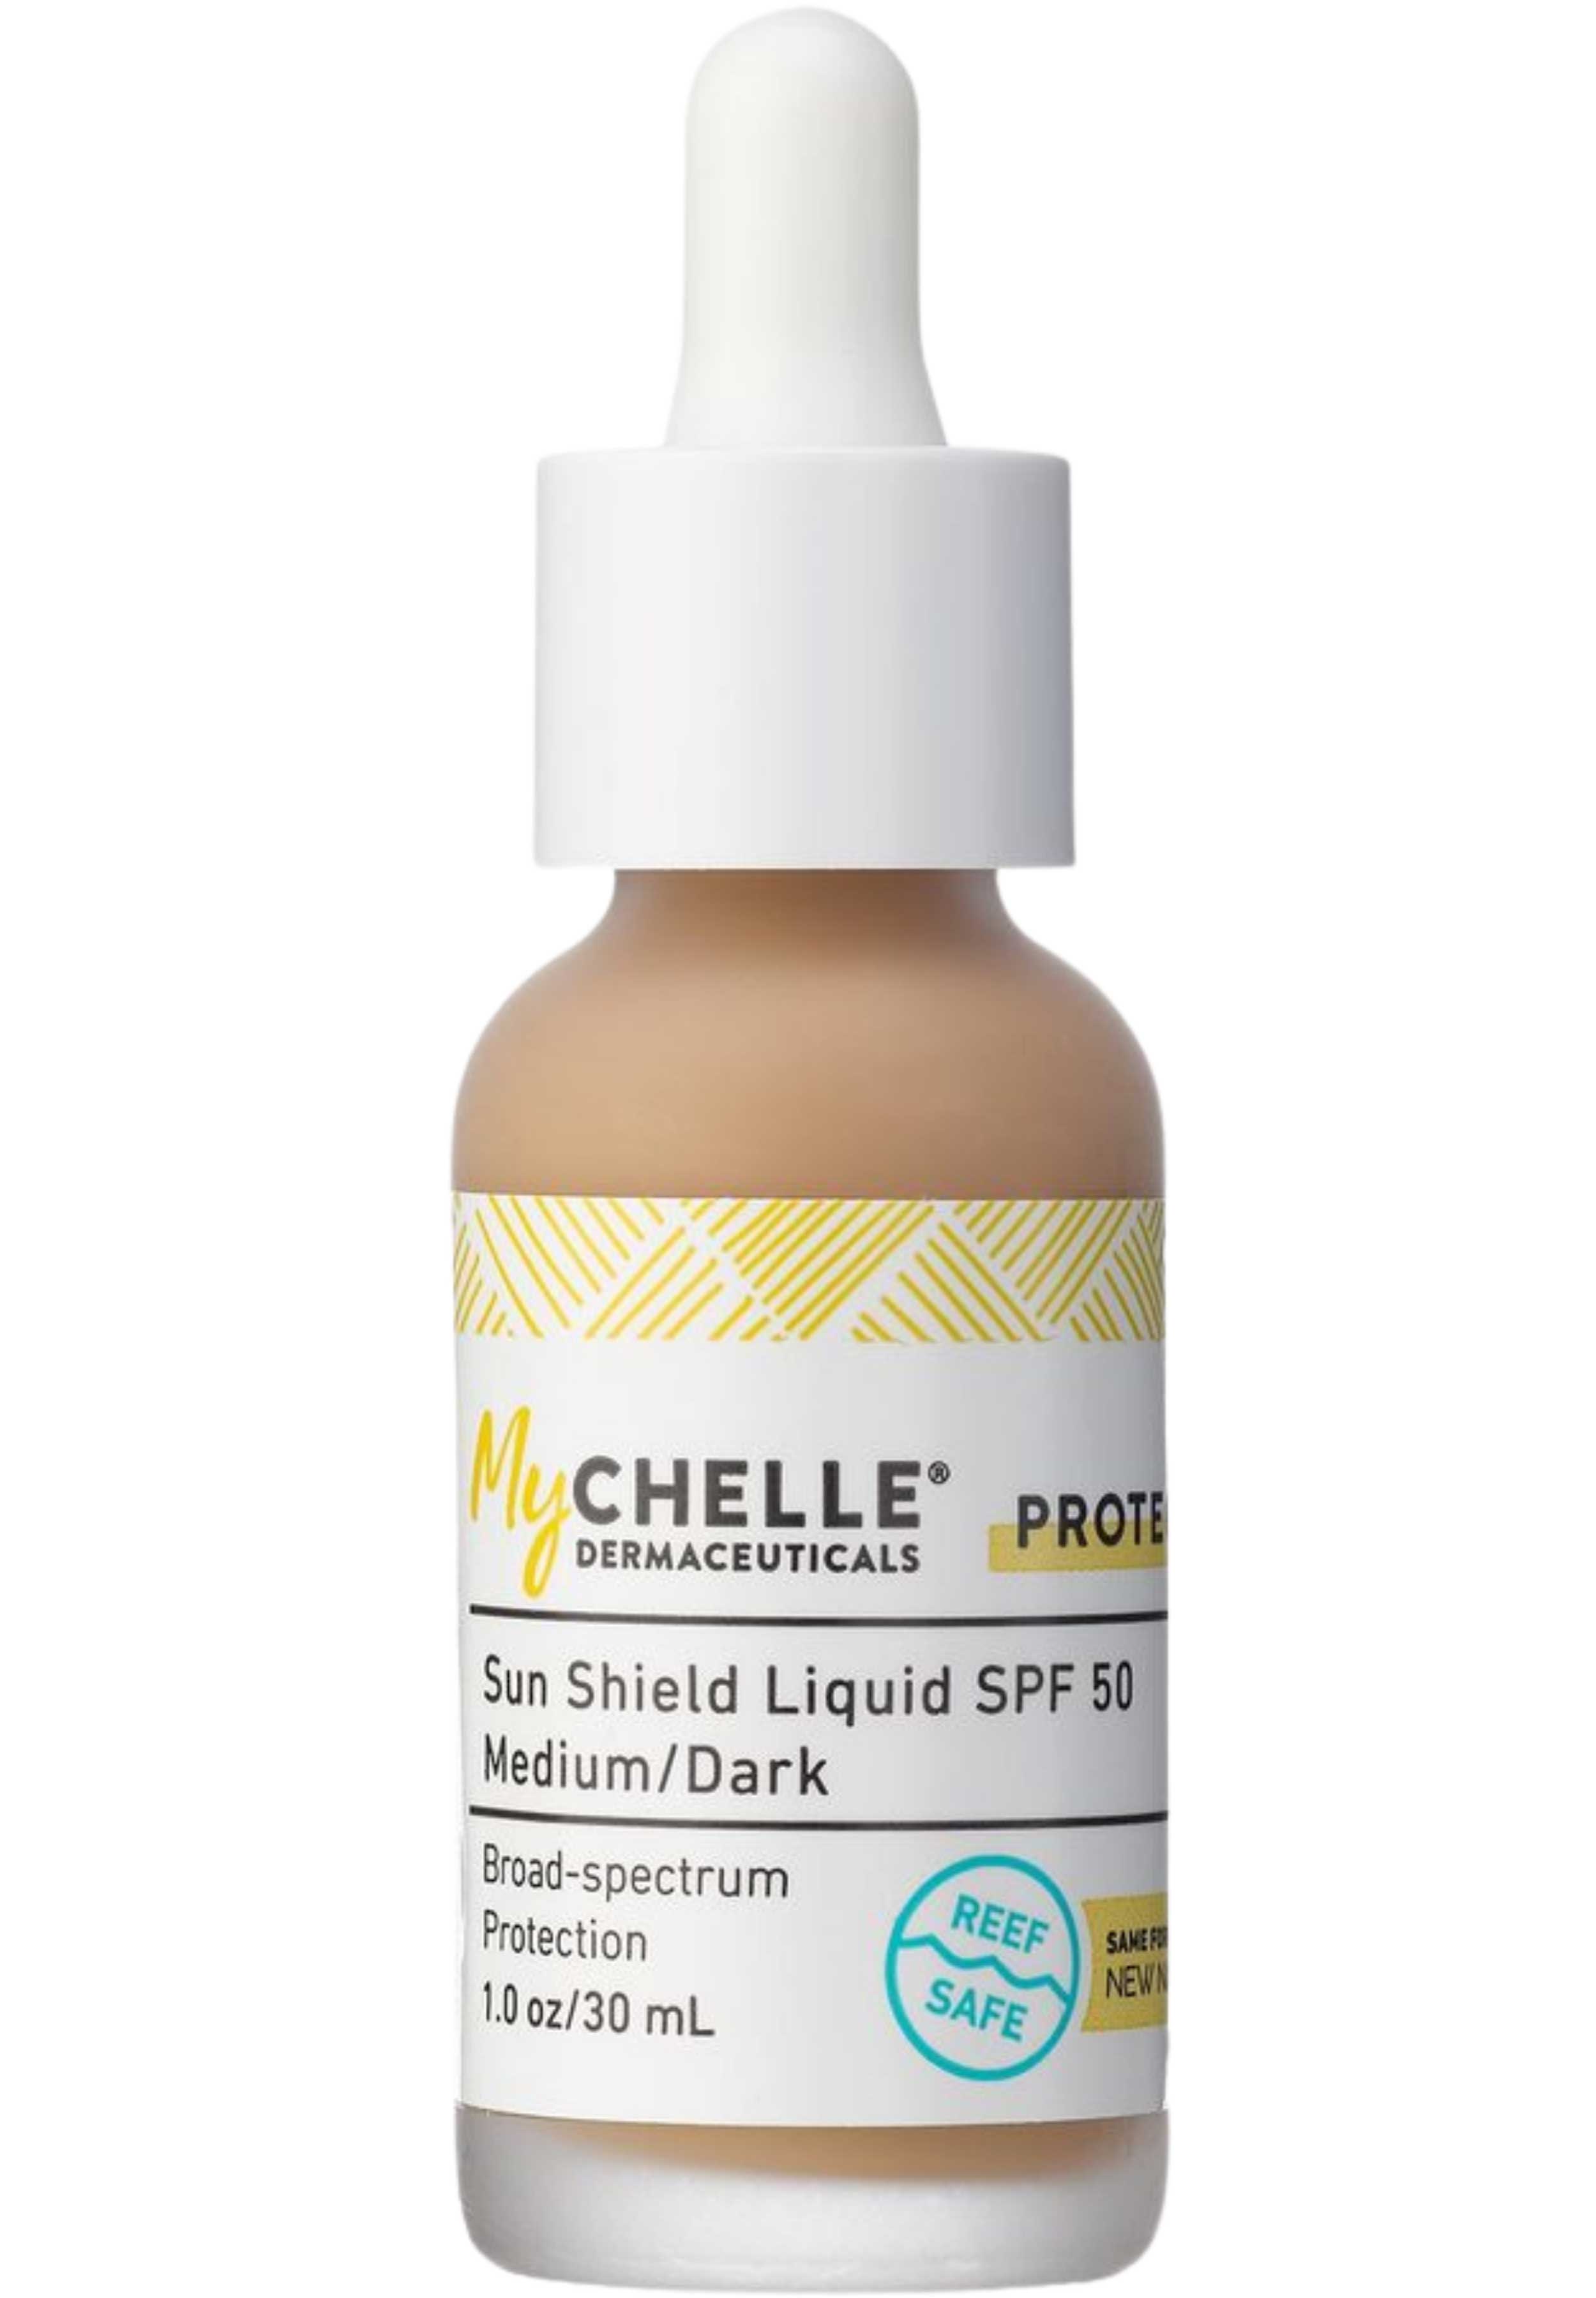 MyChelle Dermaceuticals Sun Shield Liquid SPF 50 - Medium/Dark (Natural Tan)